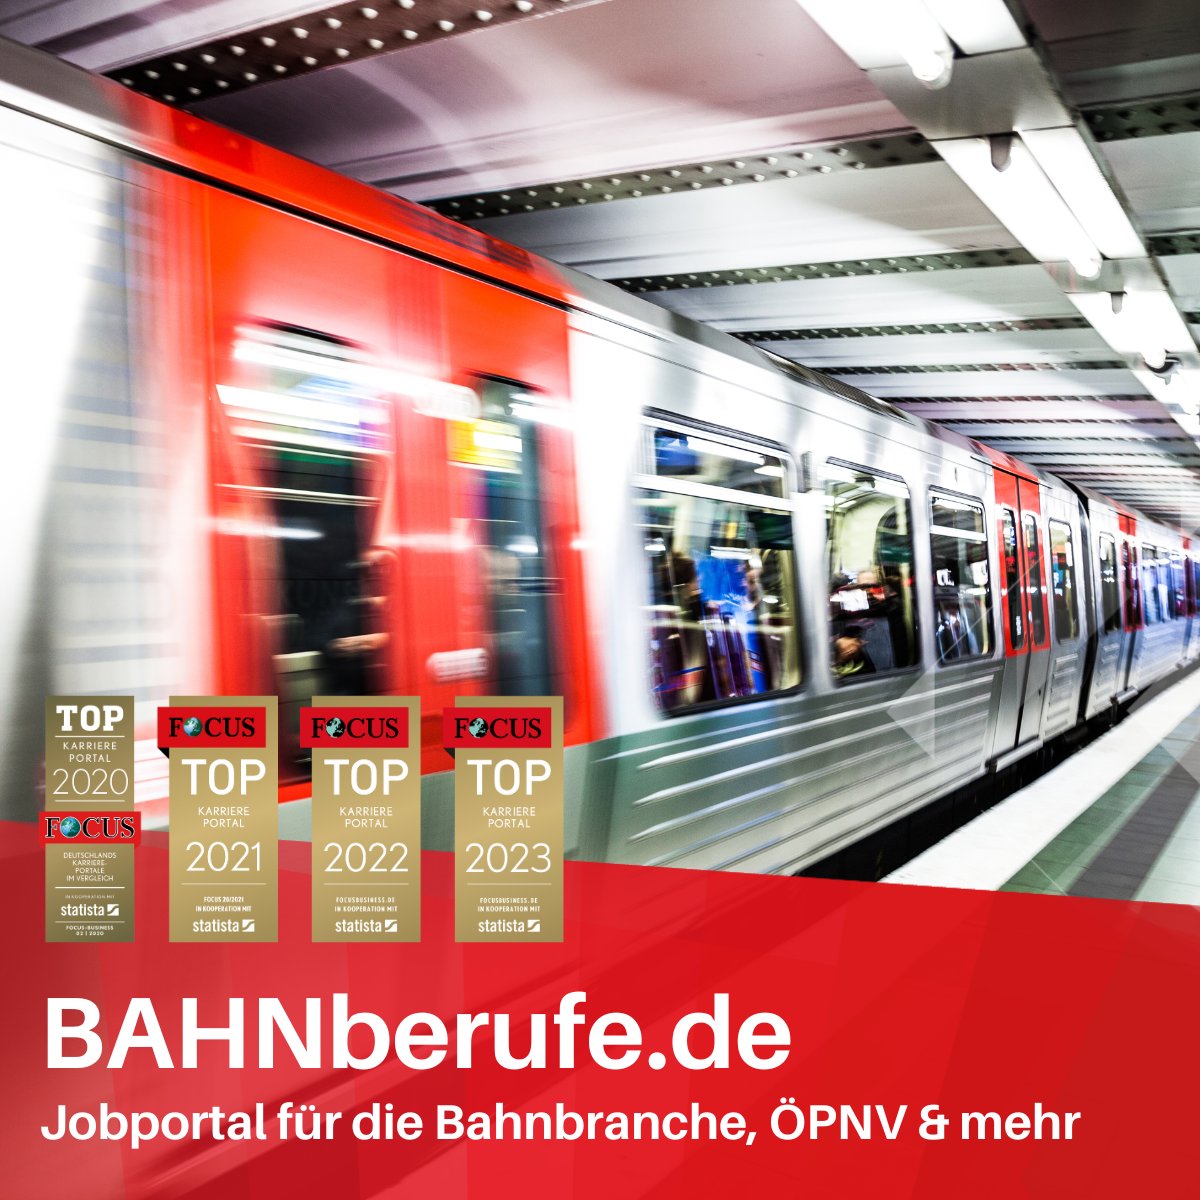 Finde mit BAHNberufe.de - Jobs und Personal in Bahnbranche und ÖPNV 

#Eisenbahn #Bahnberufe #Jobs #ÖPNV #Jobportal #Personalsuche #Jobsuche bahnberufe.de